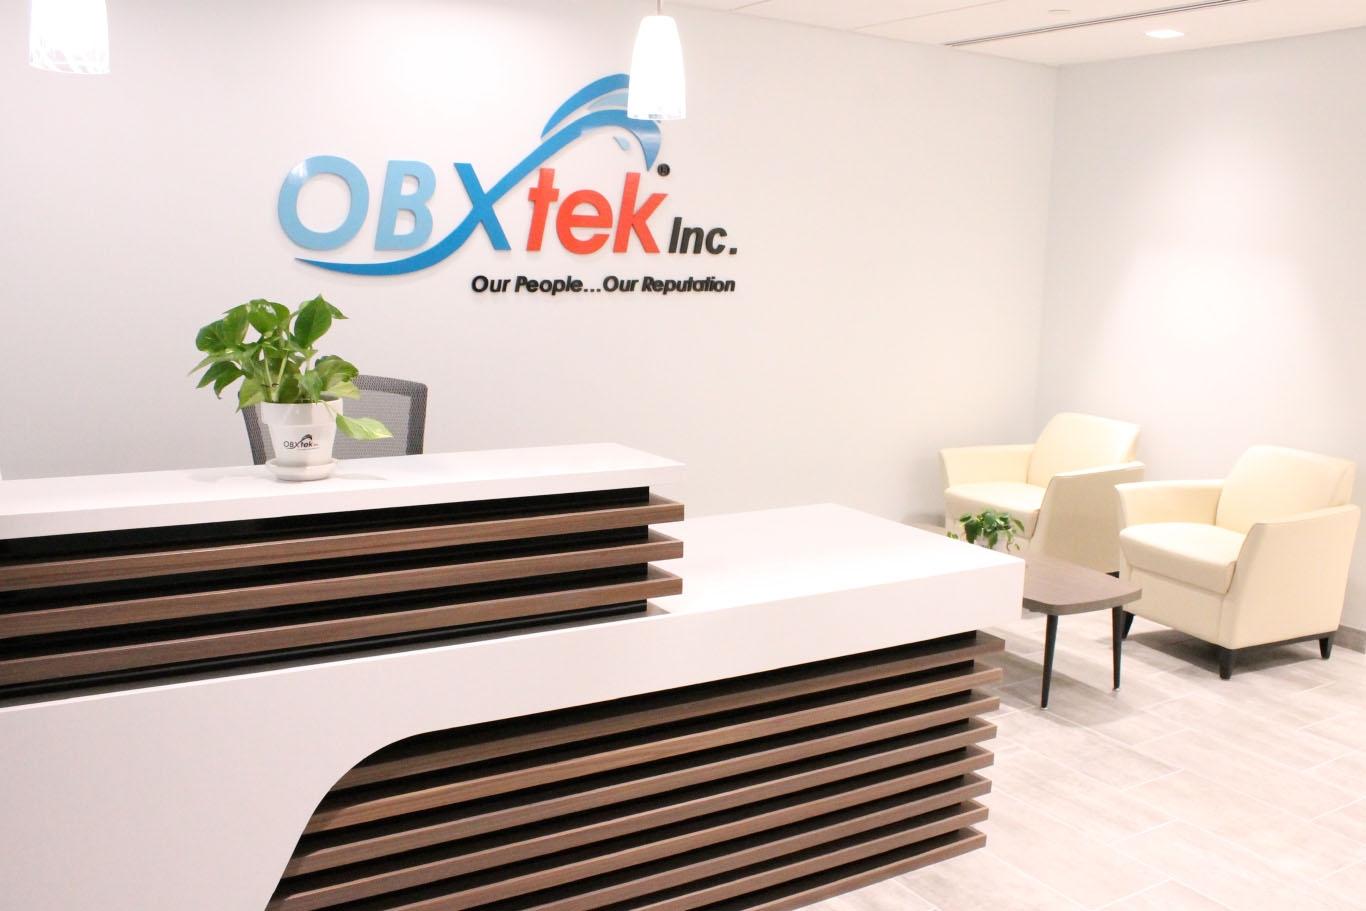 OBXtek reception